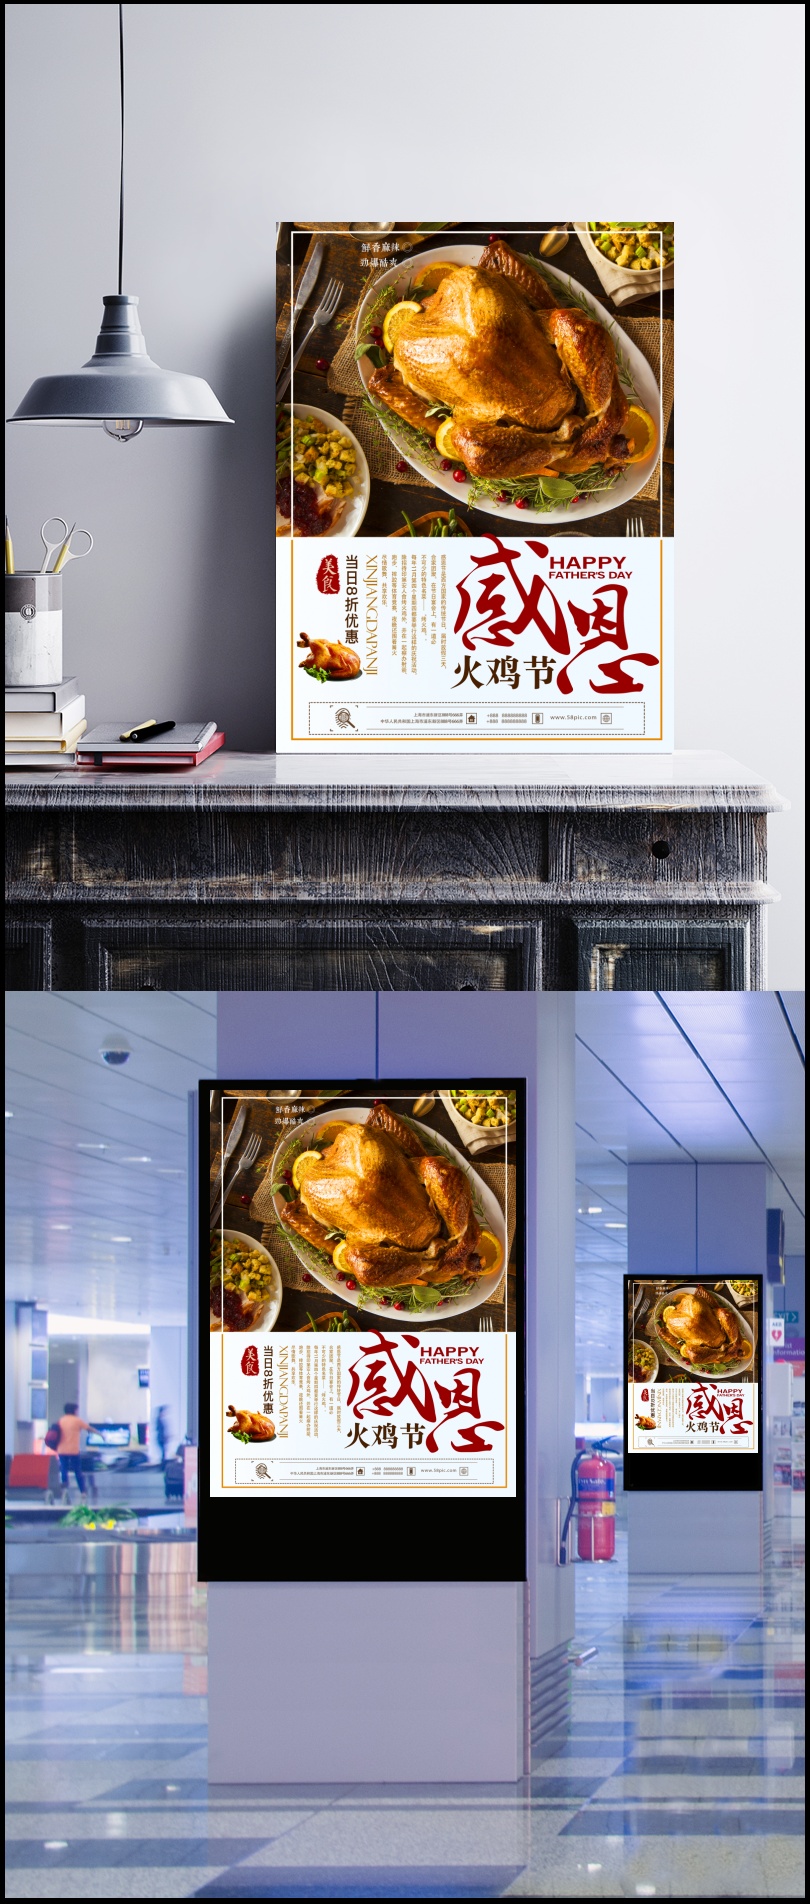 简约大气感恩节火鸡美食新品上市促销海报